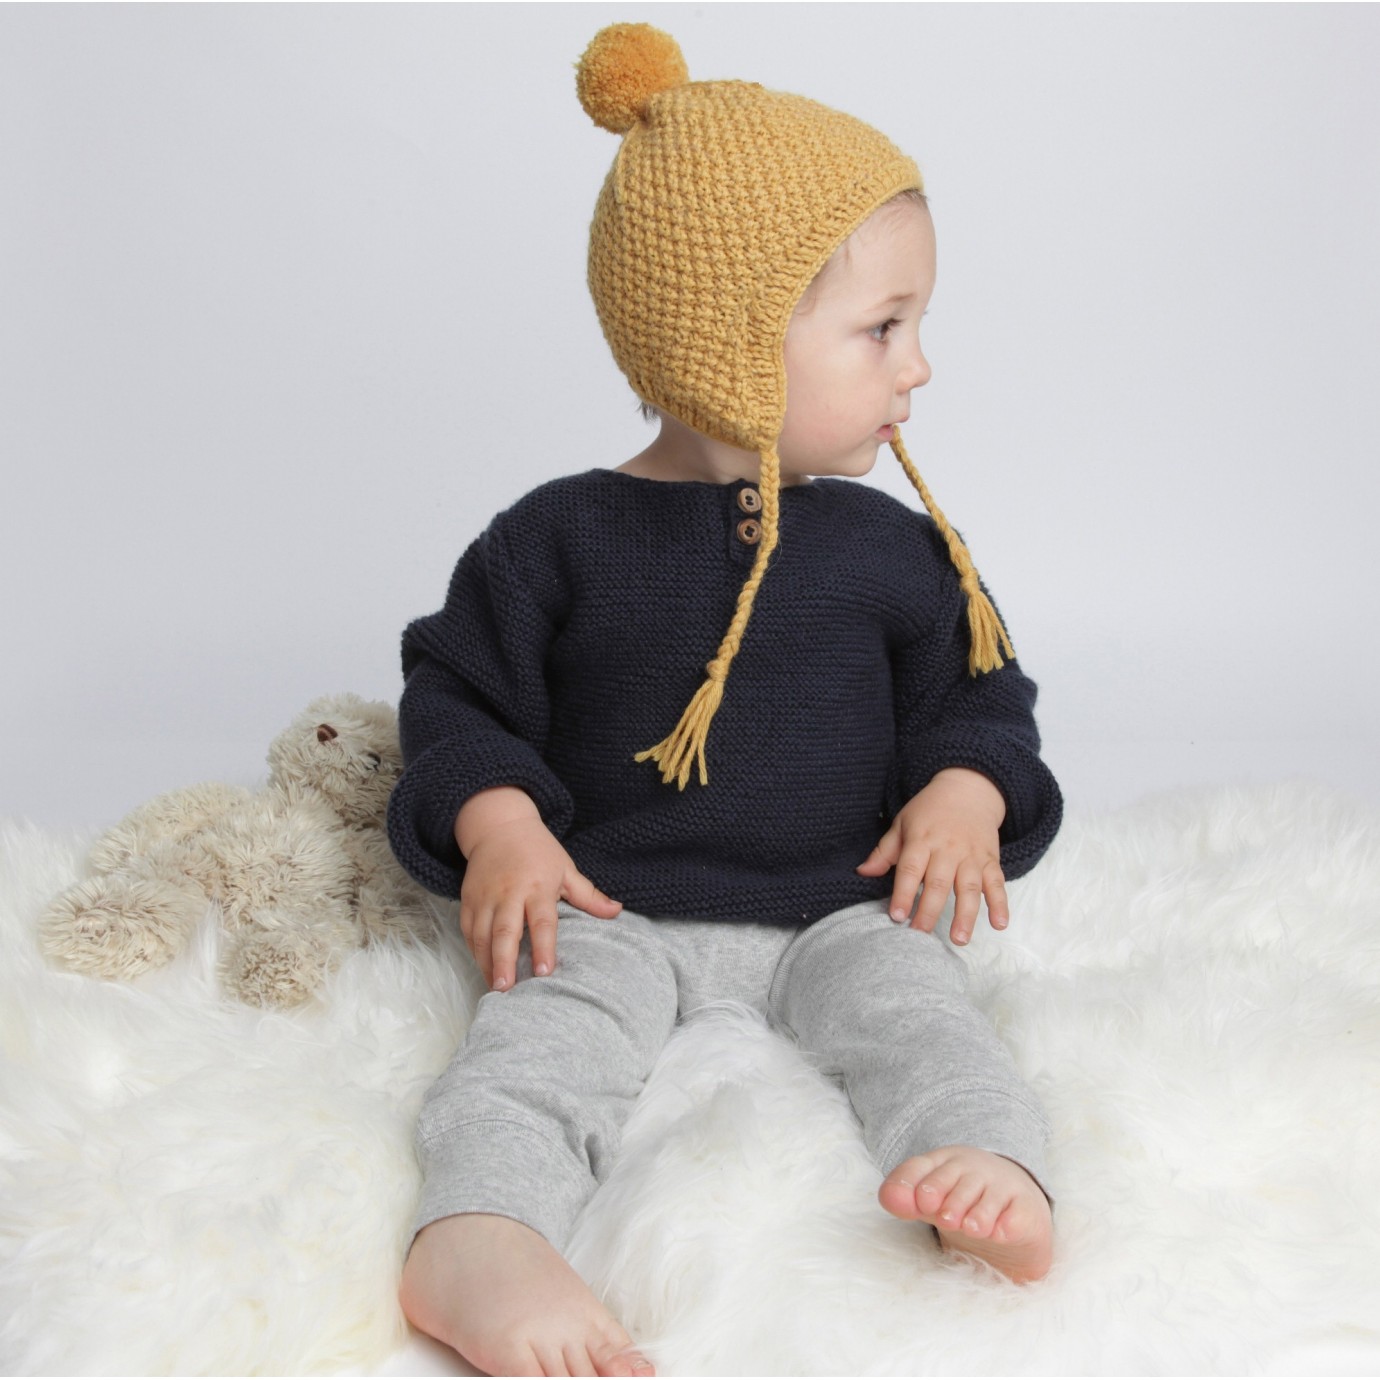 Modele patron bonnet bébé fille avec pompom en laine archiduchesse